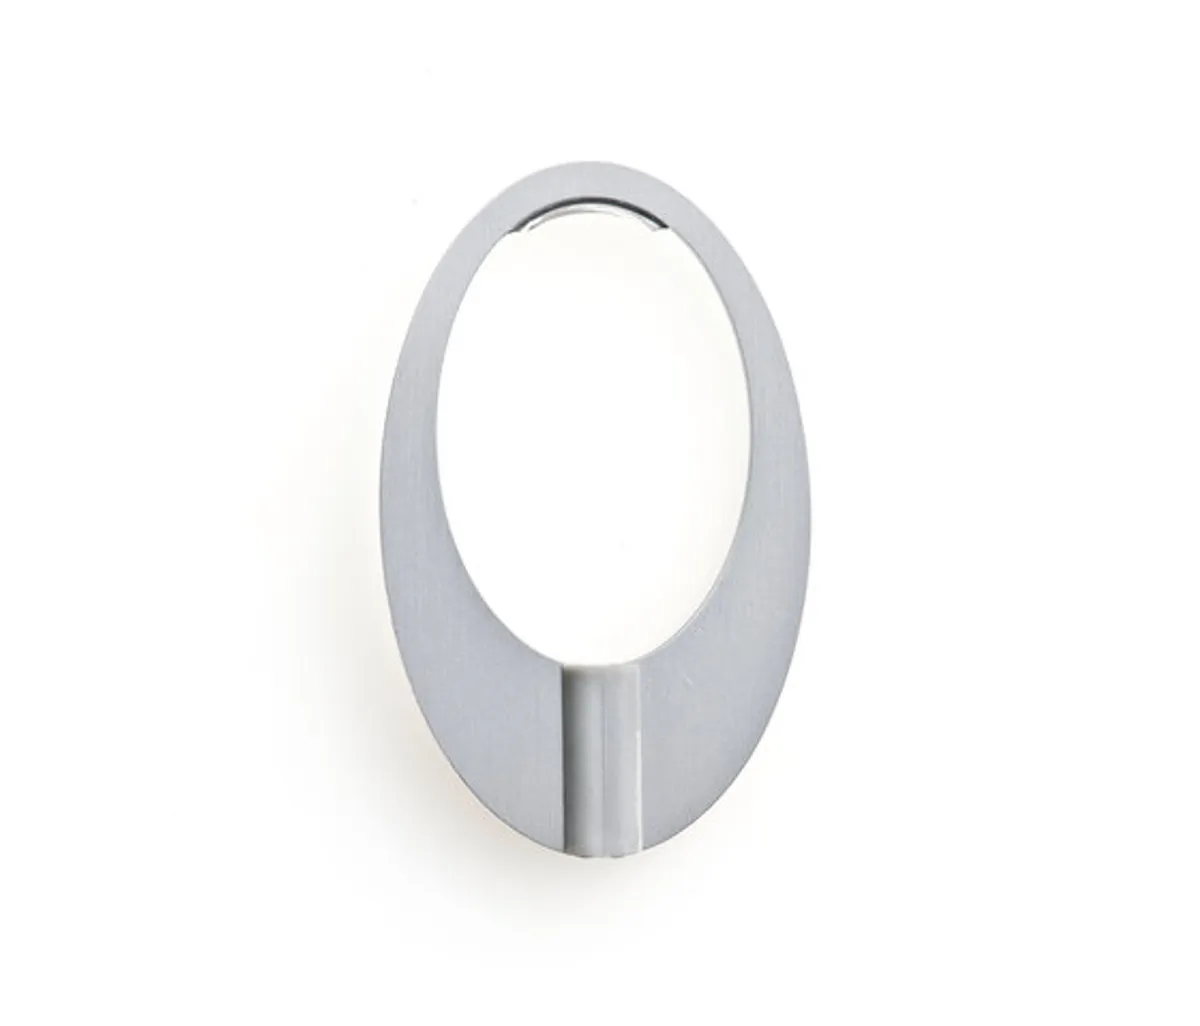 Designerringe "oval" von Interstil